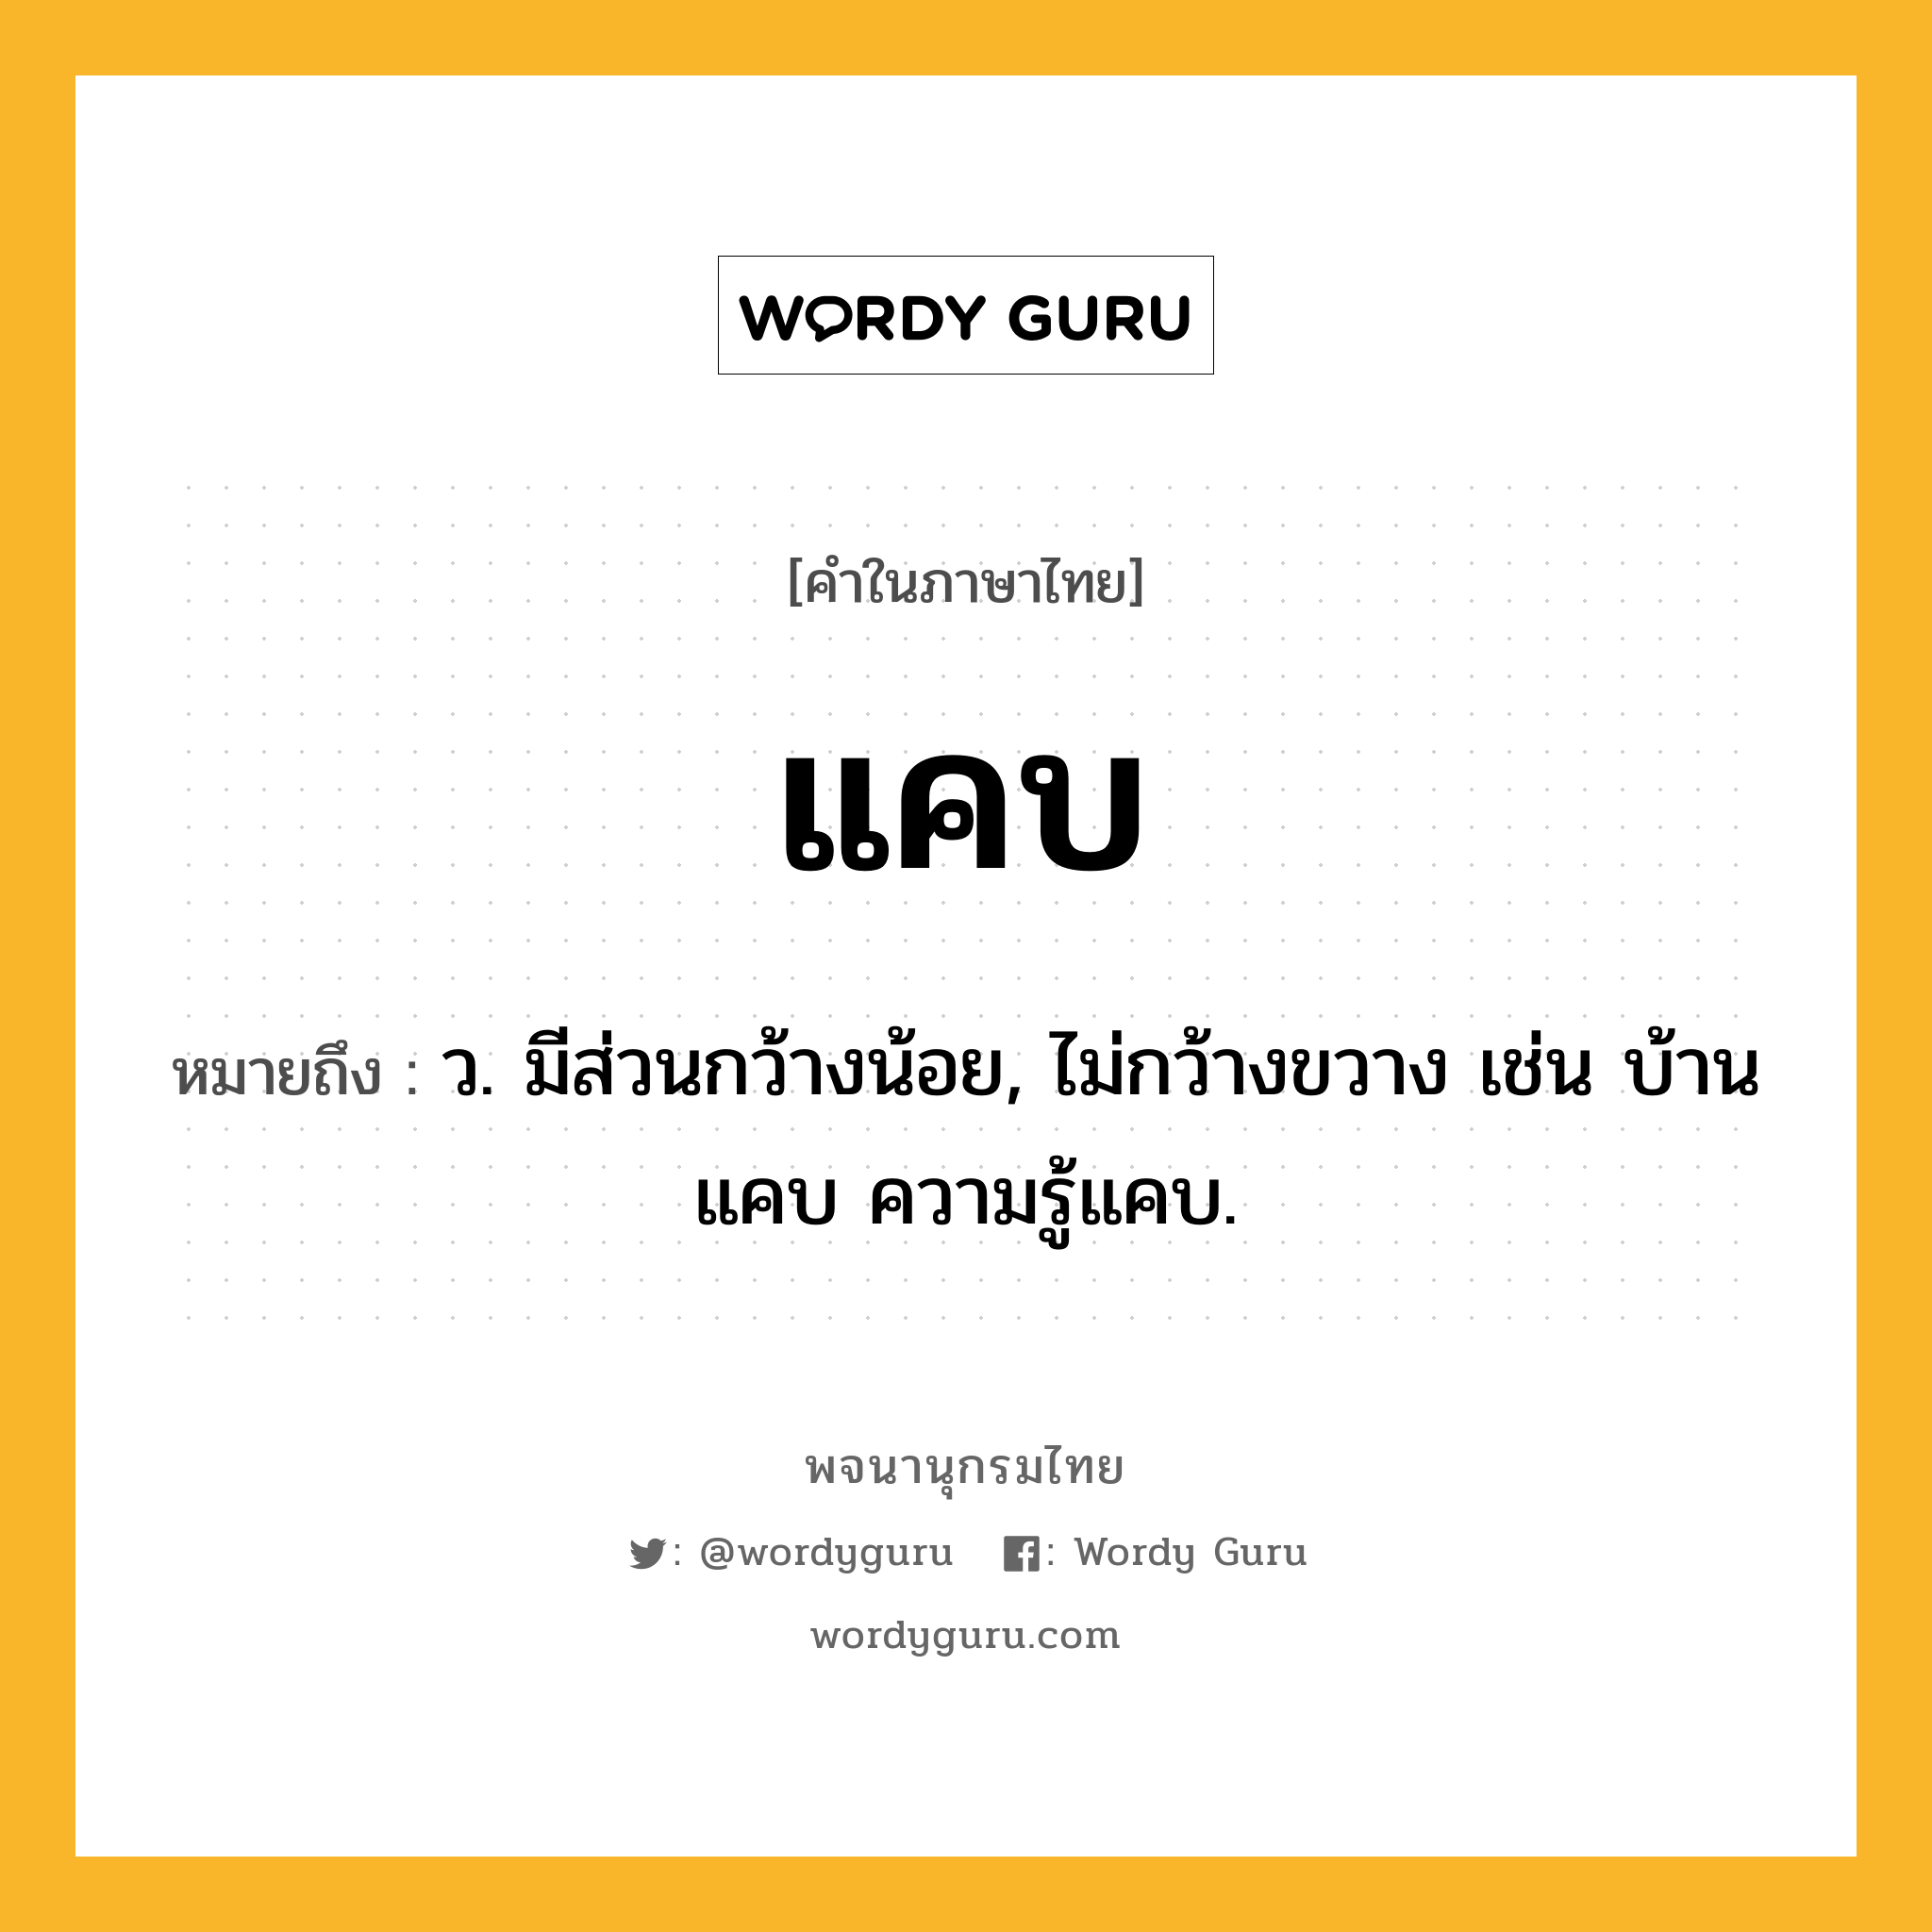 แคบ ความหมาย หมายถึงอะไร?, คำในภาษาไทย แคบ หมายถึง ว. มีส่วนกว้างน้อย, ไม่กว้างขวาง เช่น บ้านแคบ ความรู้แคบ.